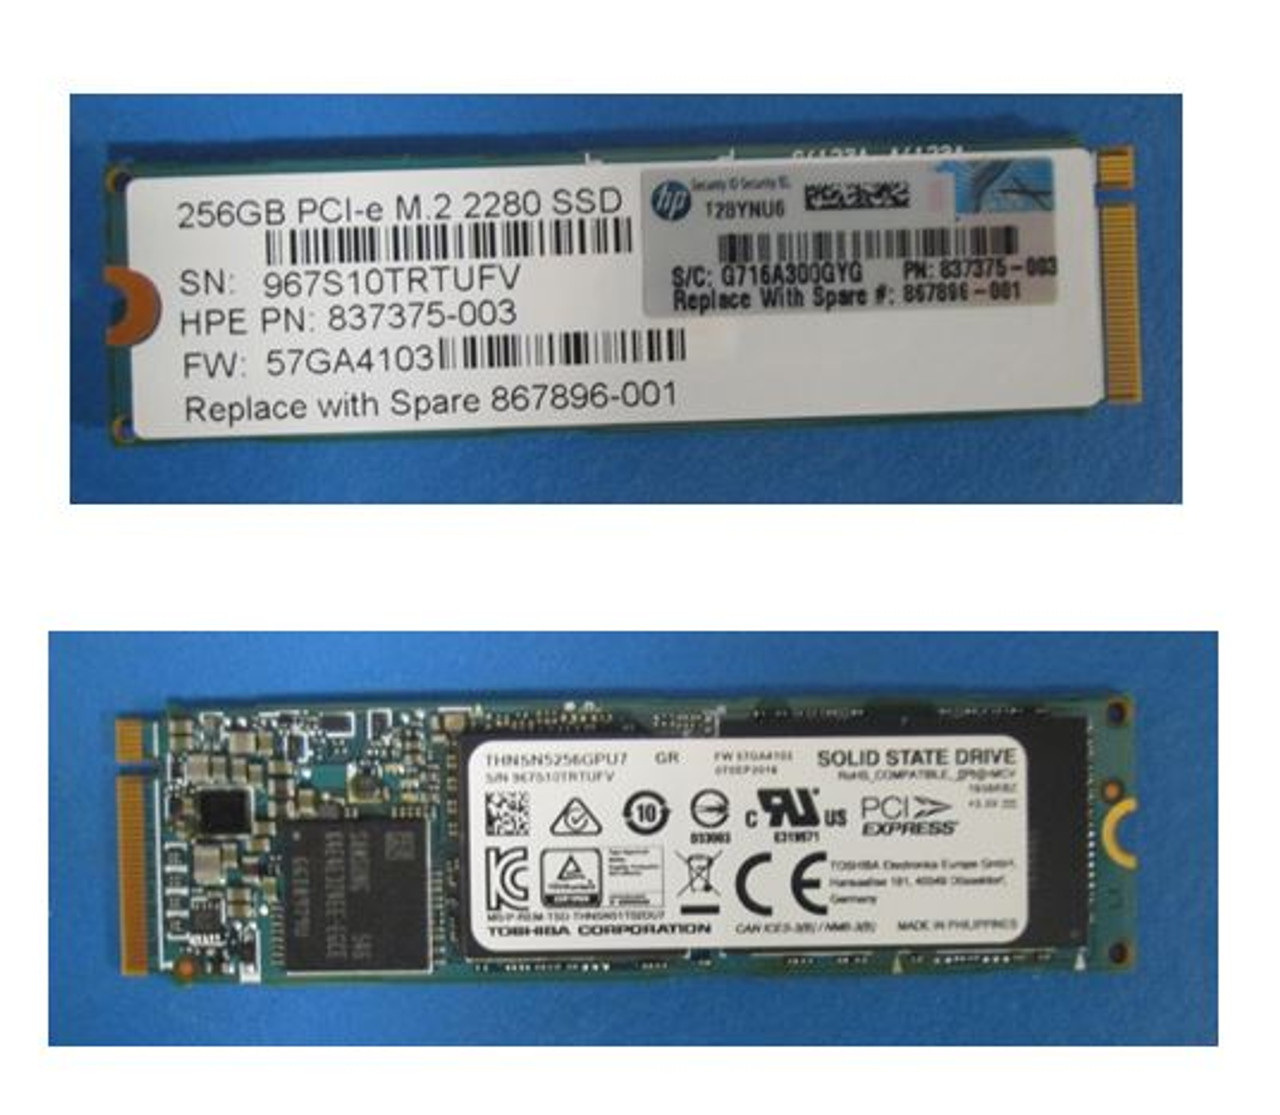 SPS-DRV SSD 256GB PCI-e M.2 2280 - 867896-001